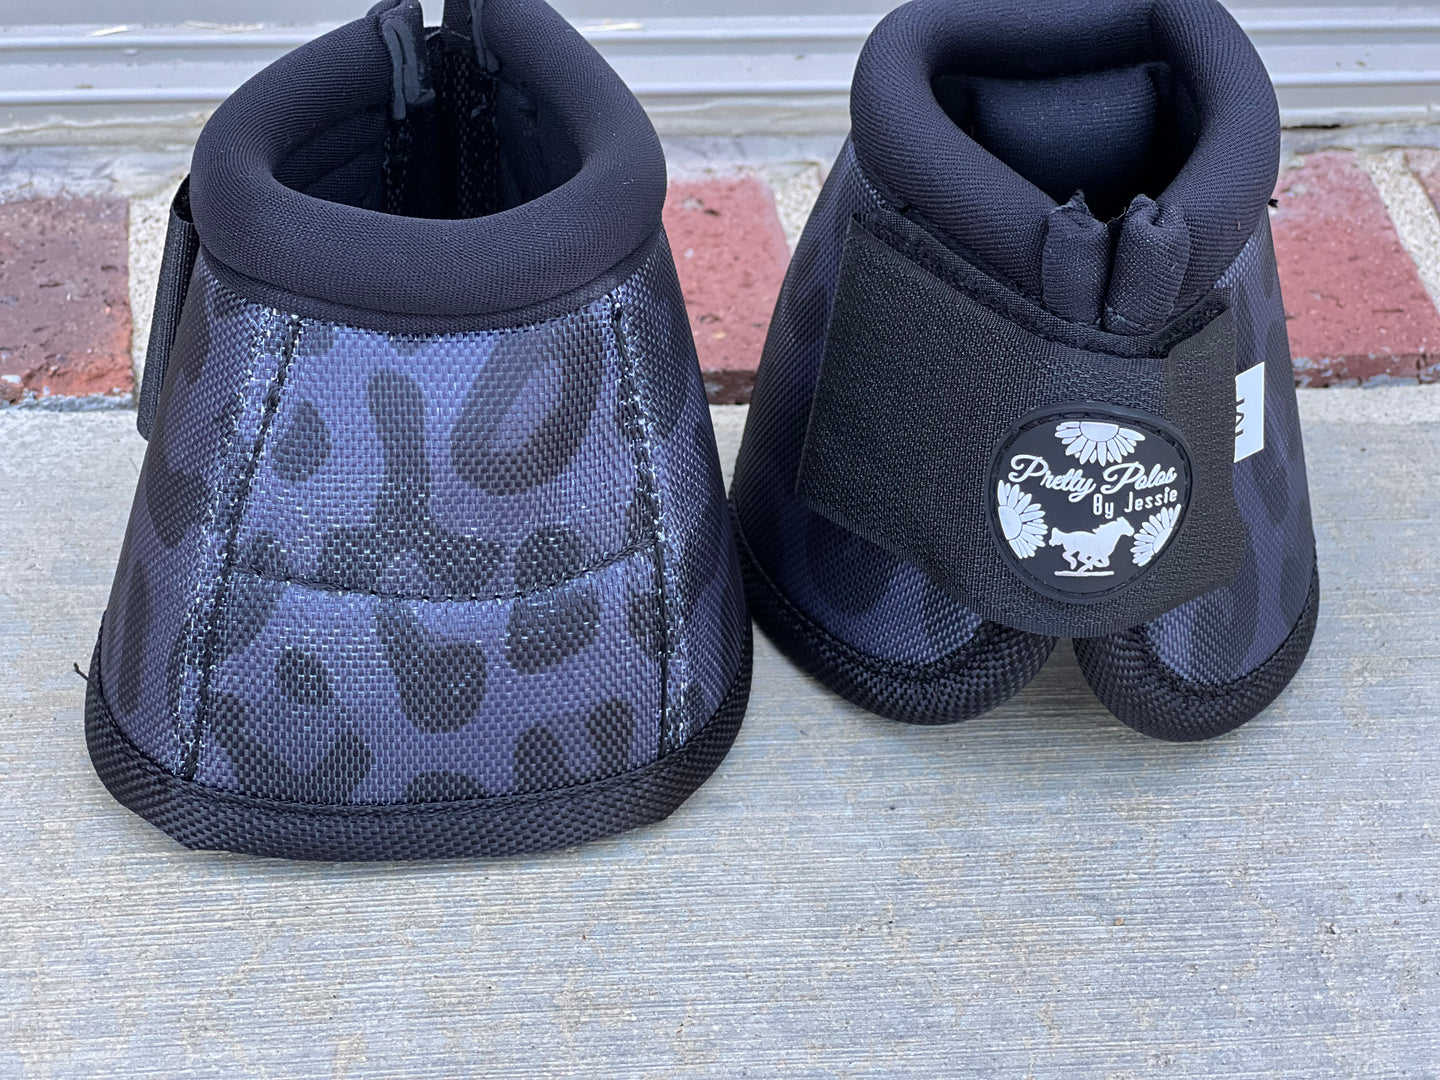 Black Cheetah Bell Boots